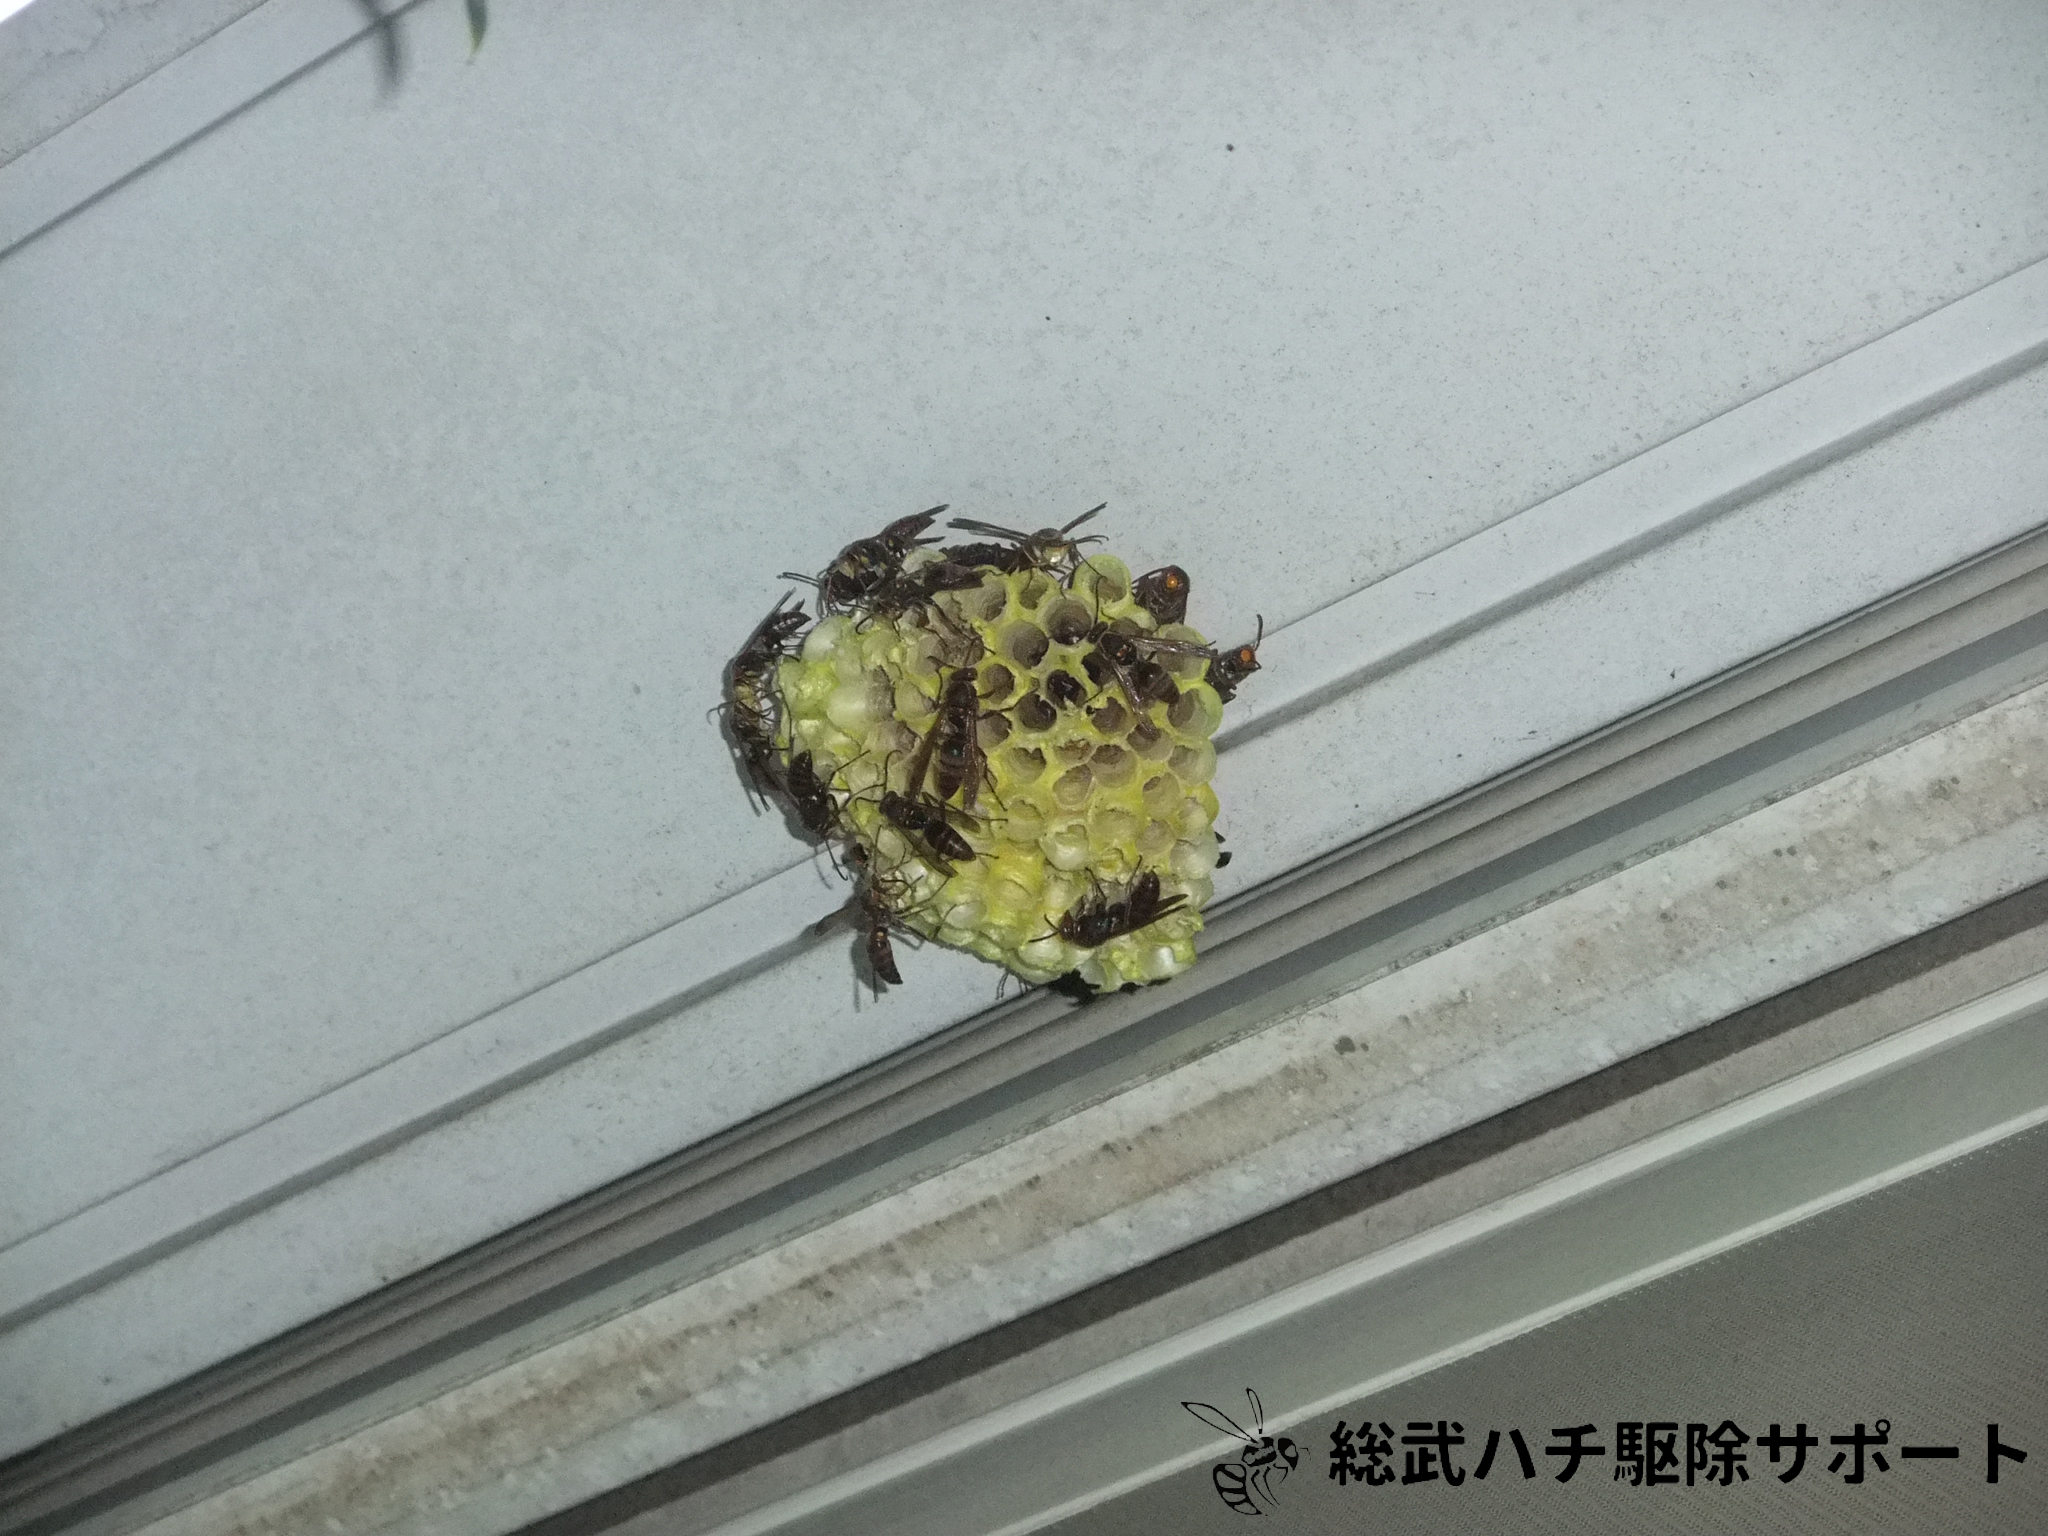 津田沼でマンションのベランダの窓にできたアシナガバチの巣を駆除